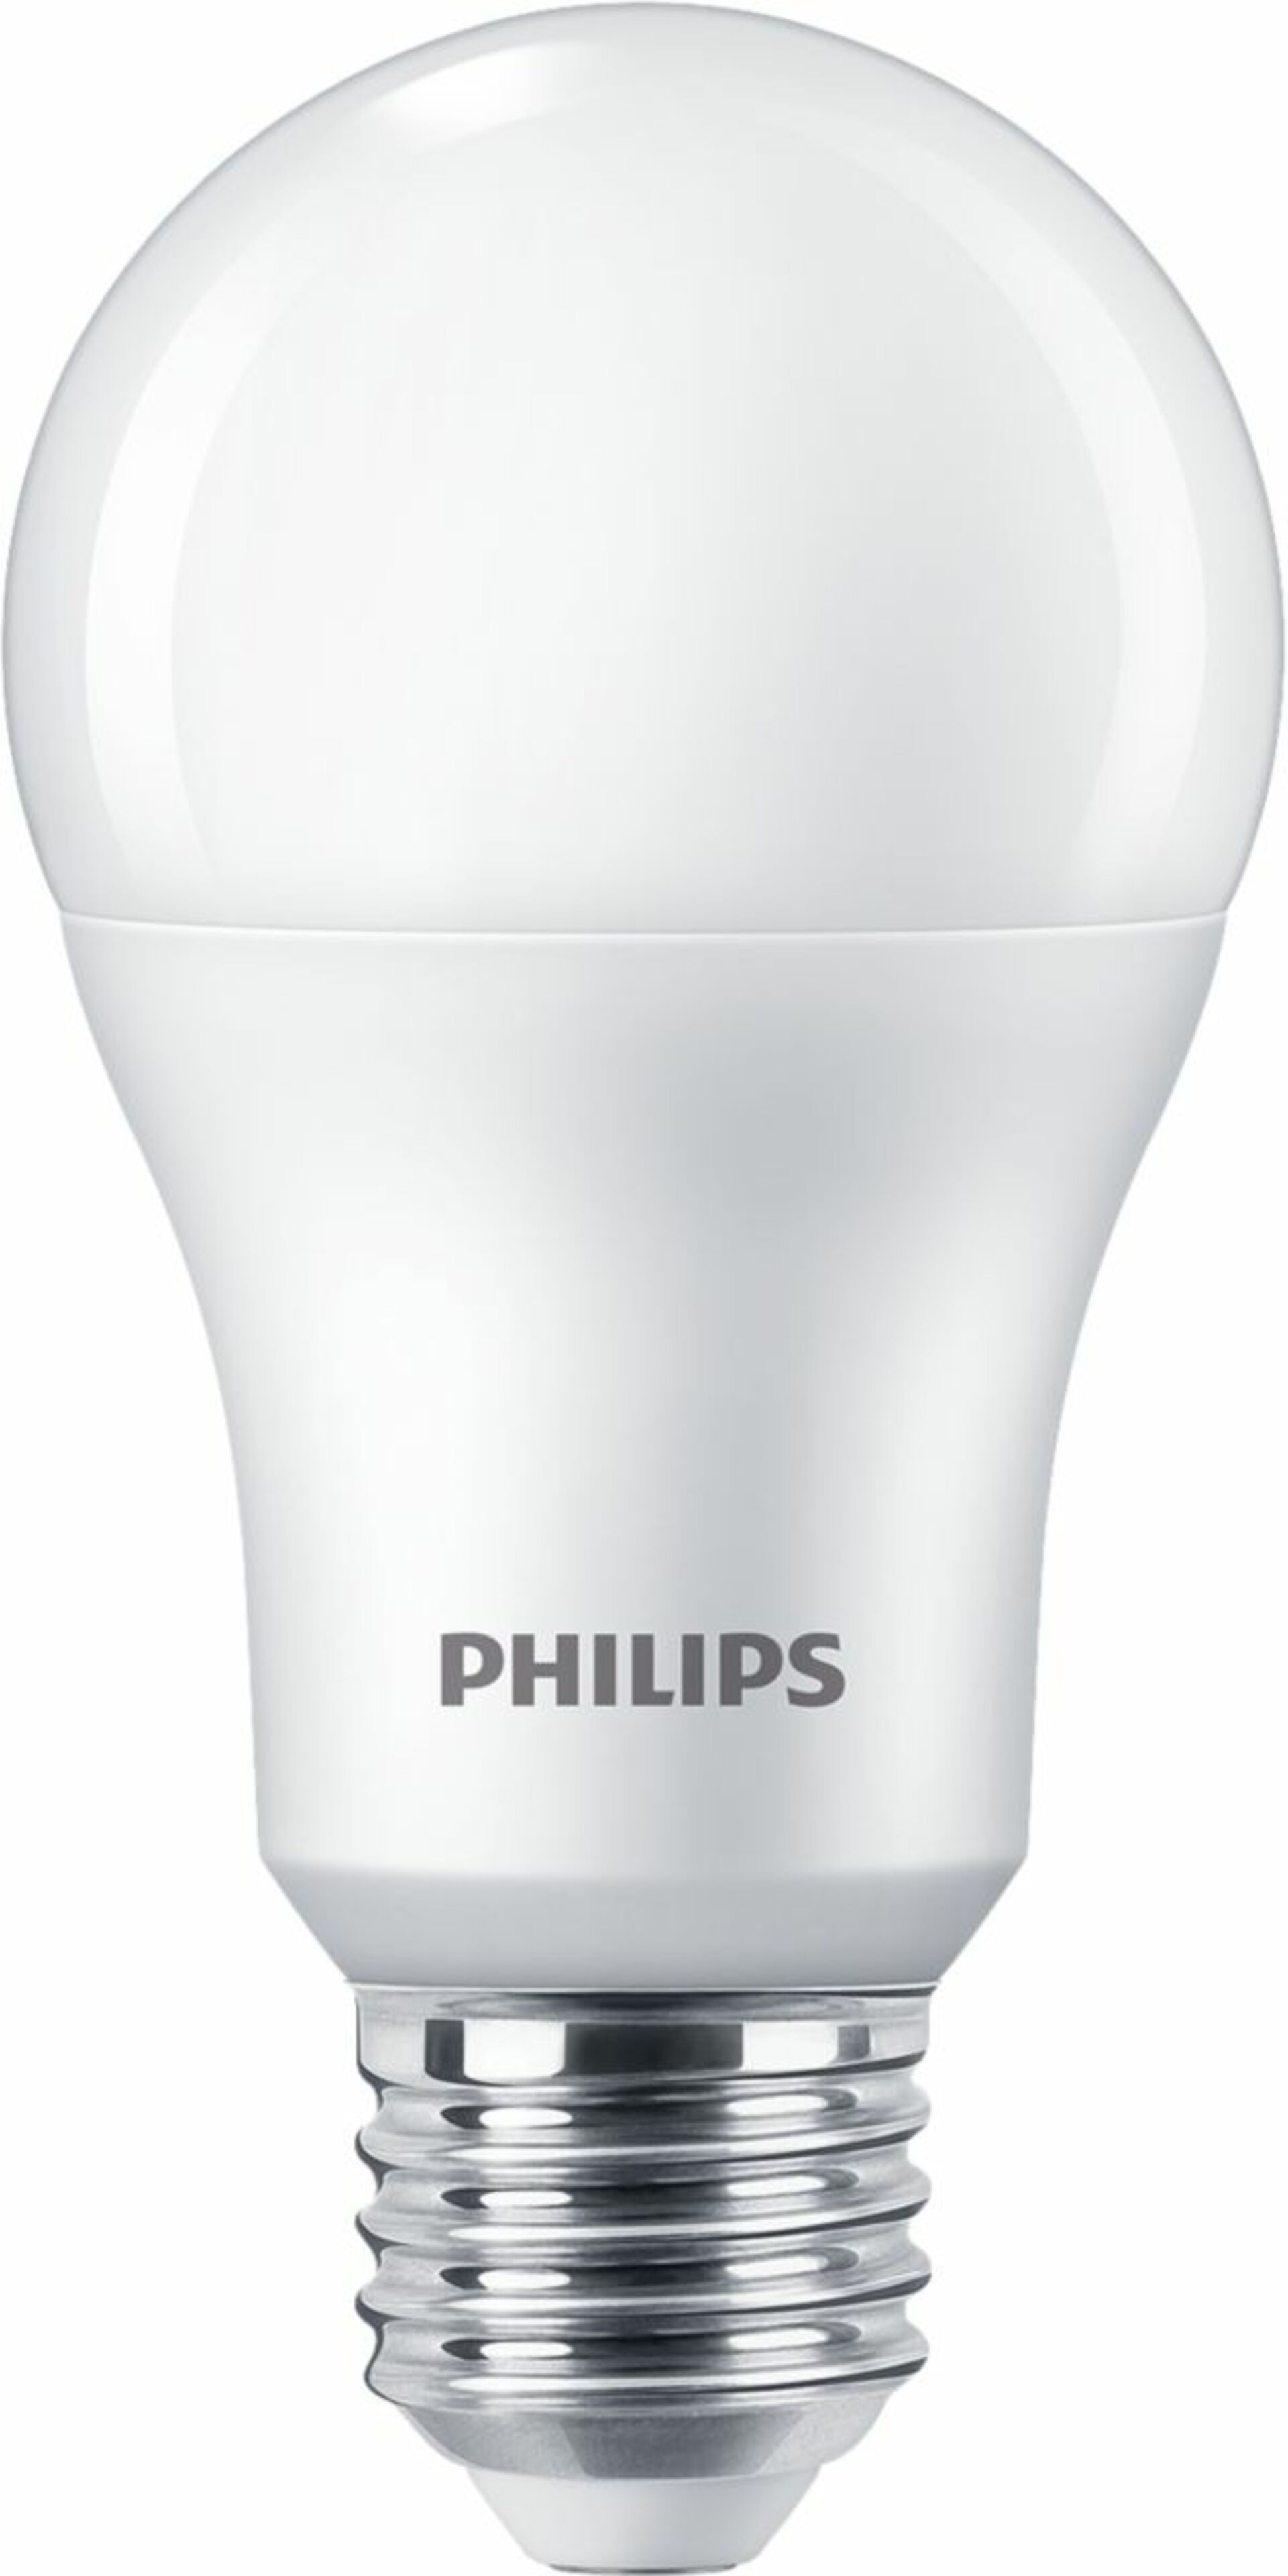 Philips CorePro LEDBulb ND 13-100W A60 E27 830